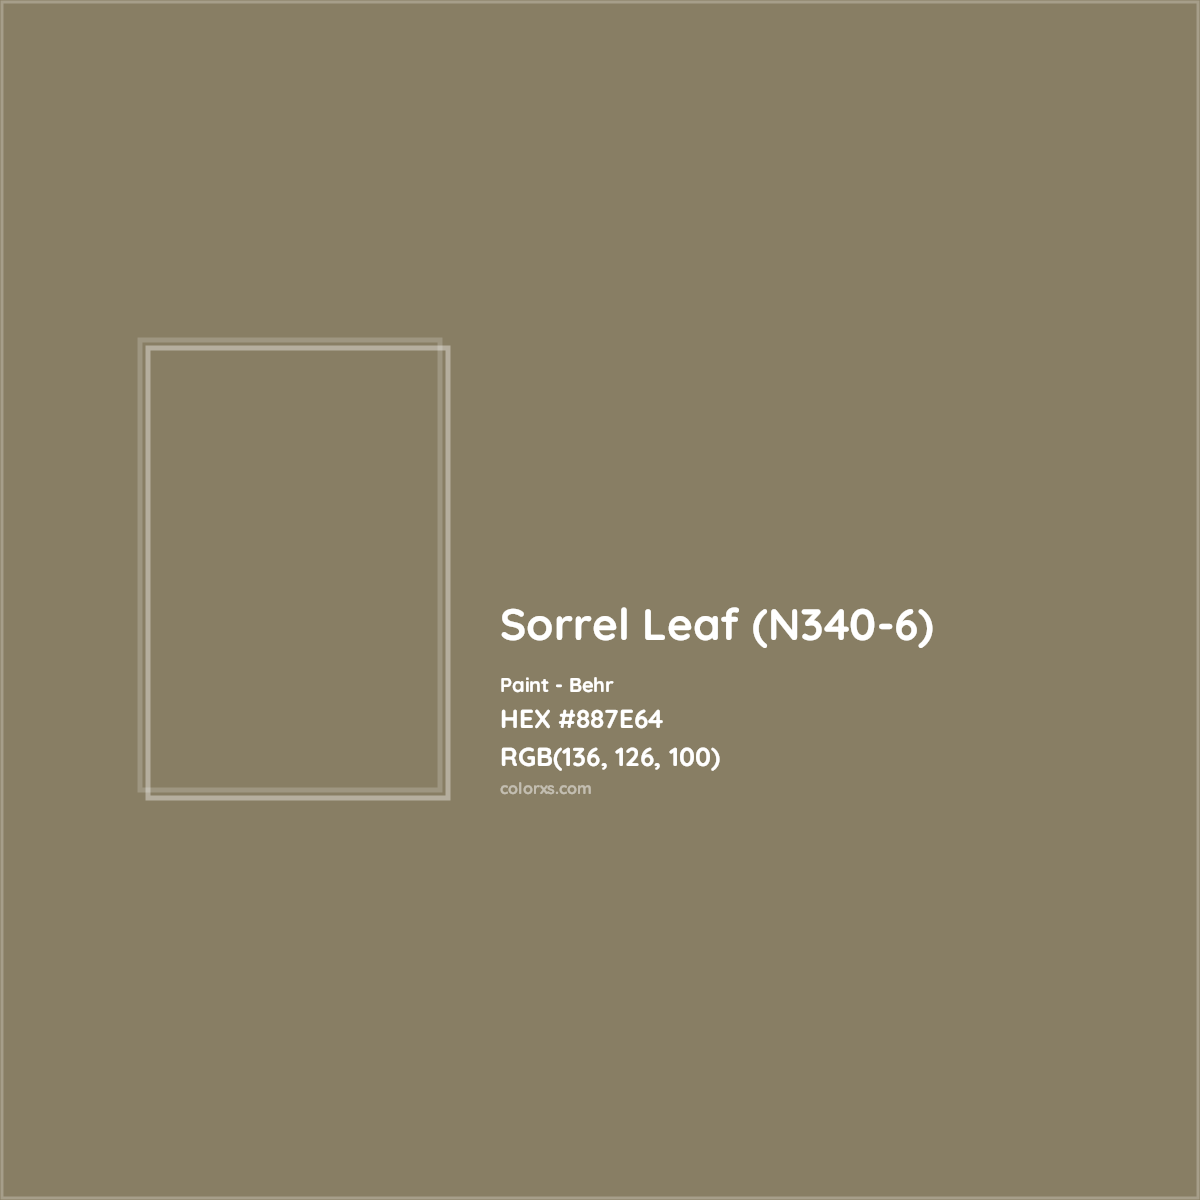 HEX #887E64 Sorrel Leaf (N340-6) Paint Behr - Color Code